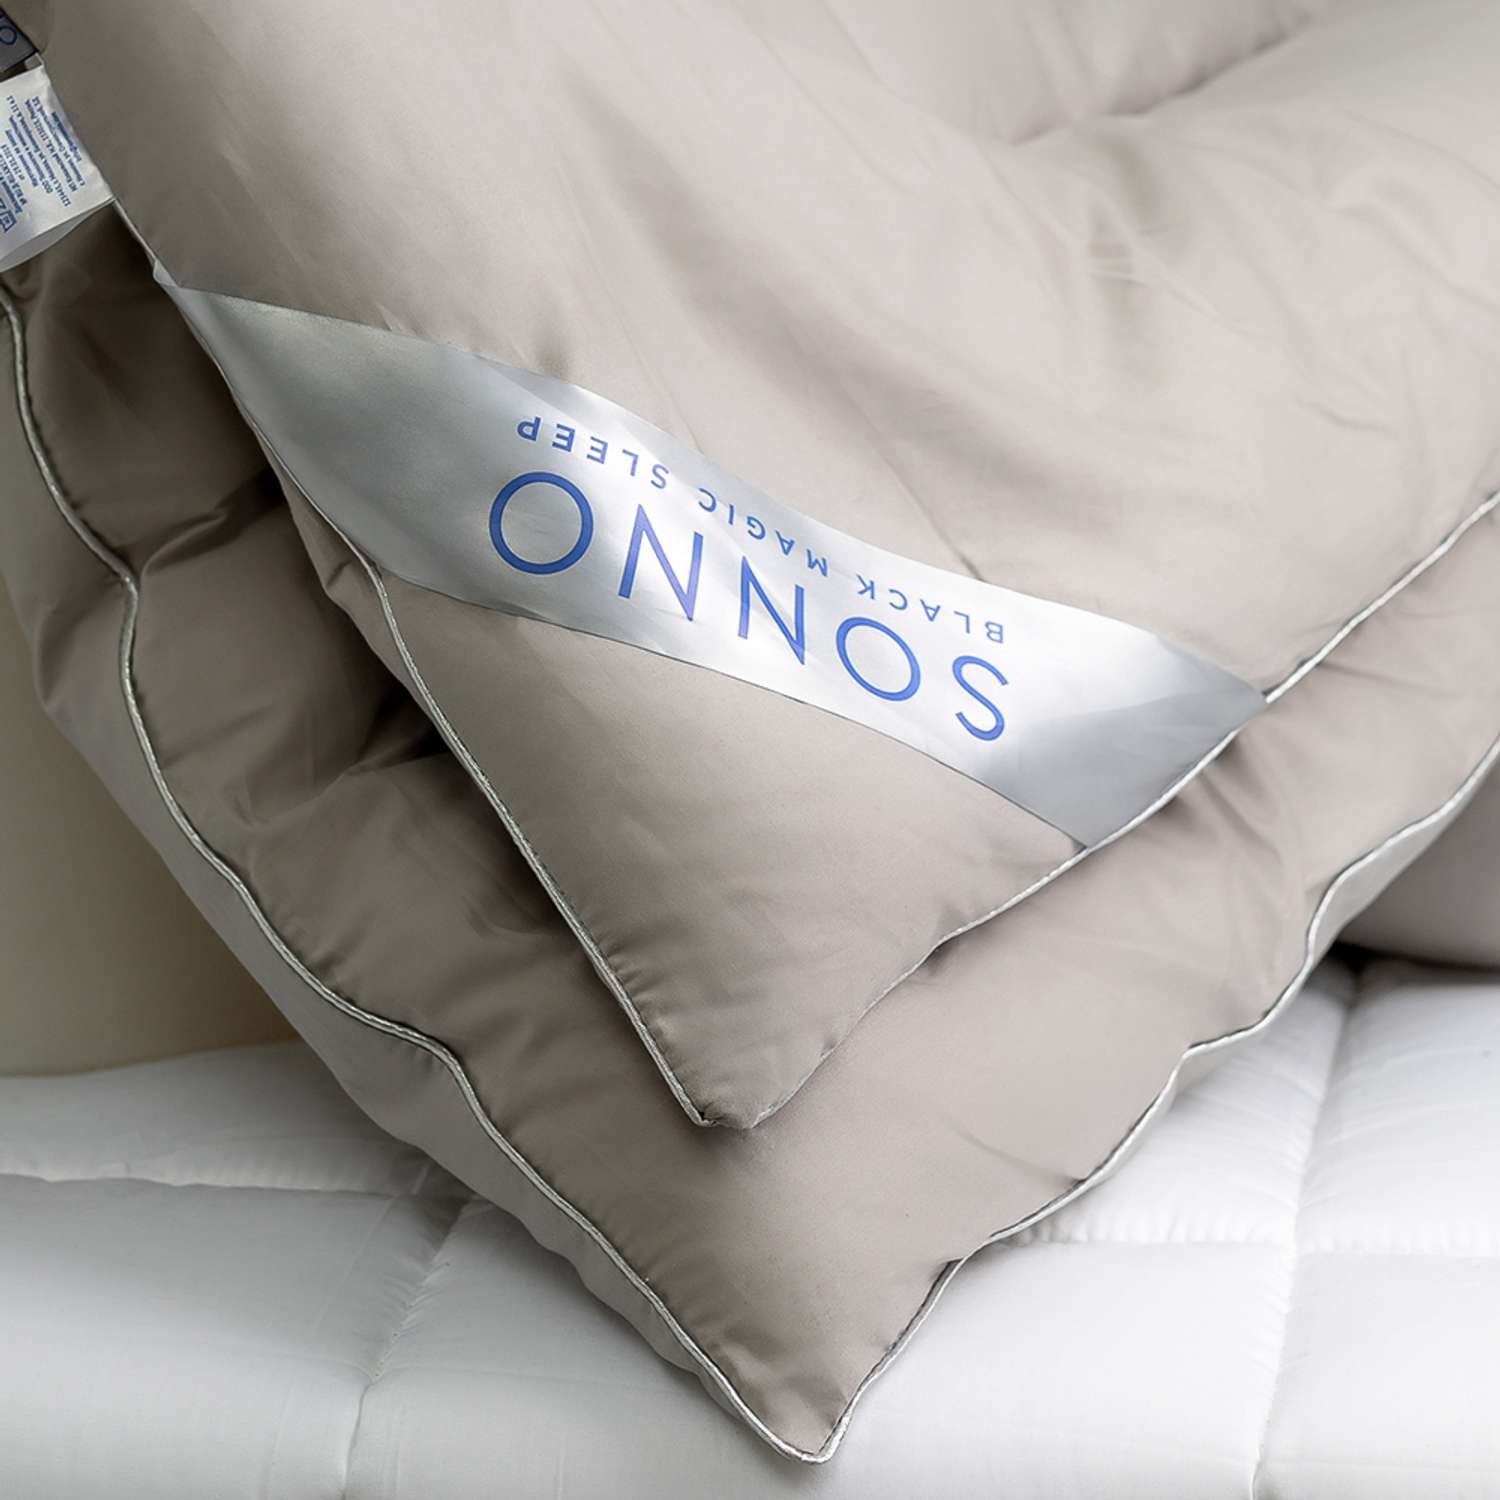 Одеяло SONNO ALCHIMIA 1.5 спальный 140x205 всесезонное с наполнителем Amicor платина - фото 4